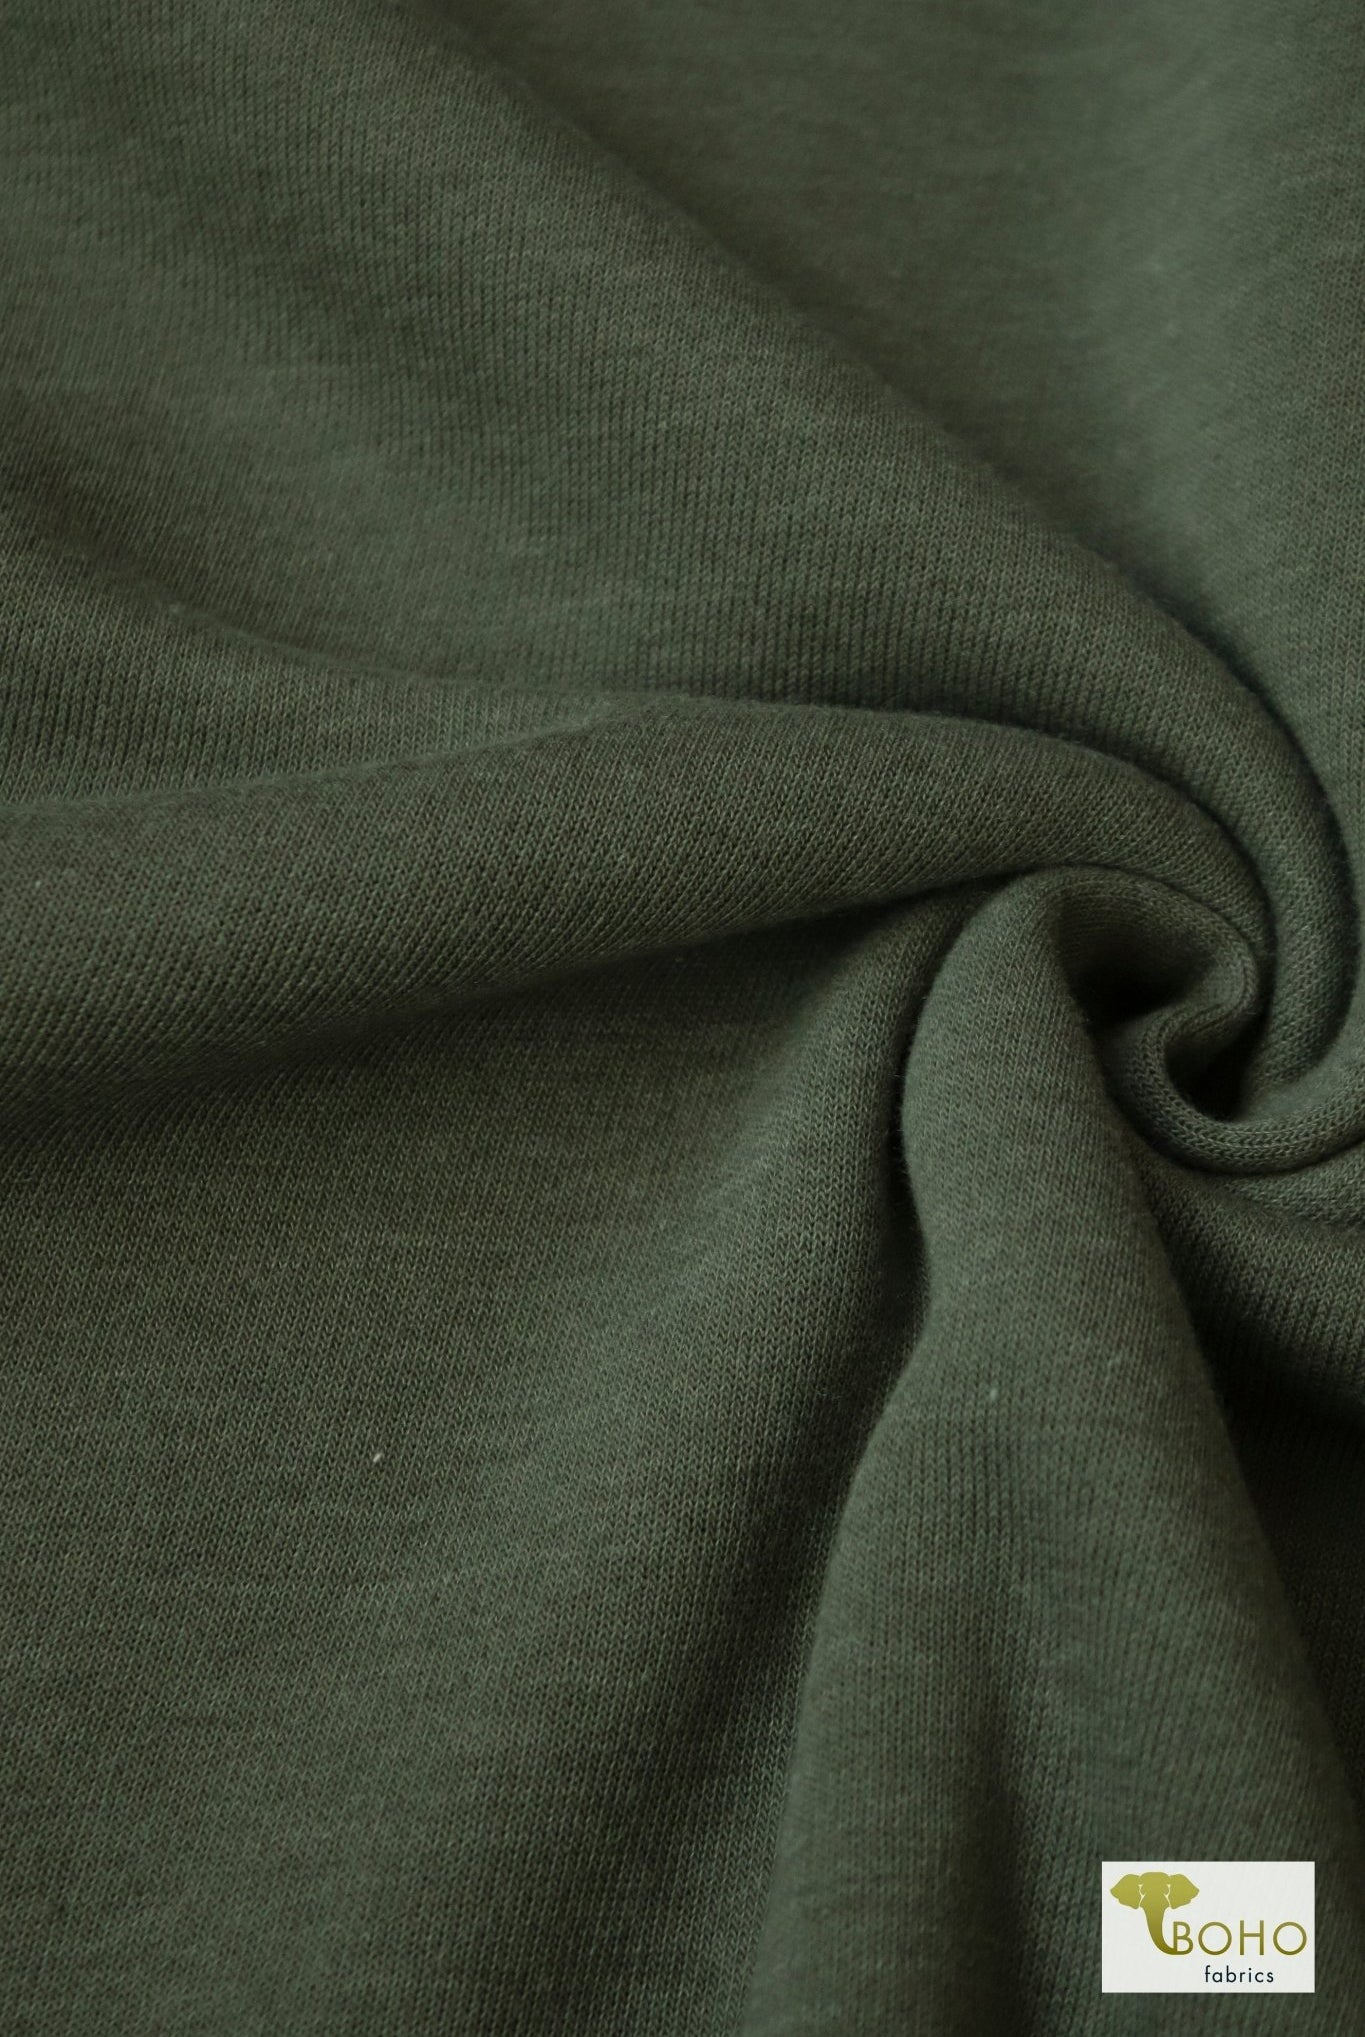 Olive Green, Sweatshirt Fleece. - Boho Fabrics